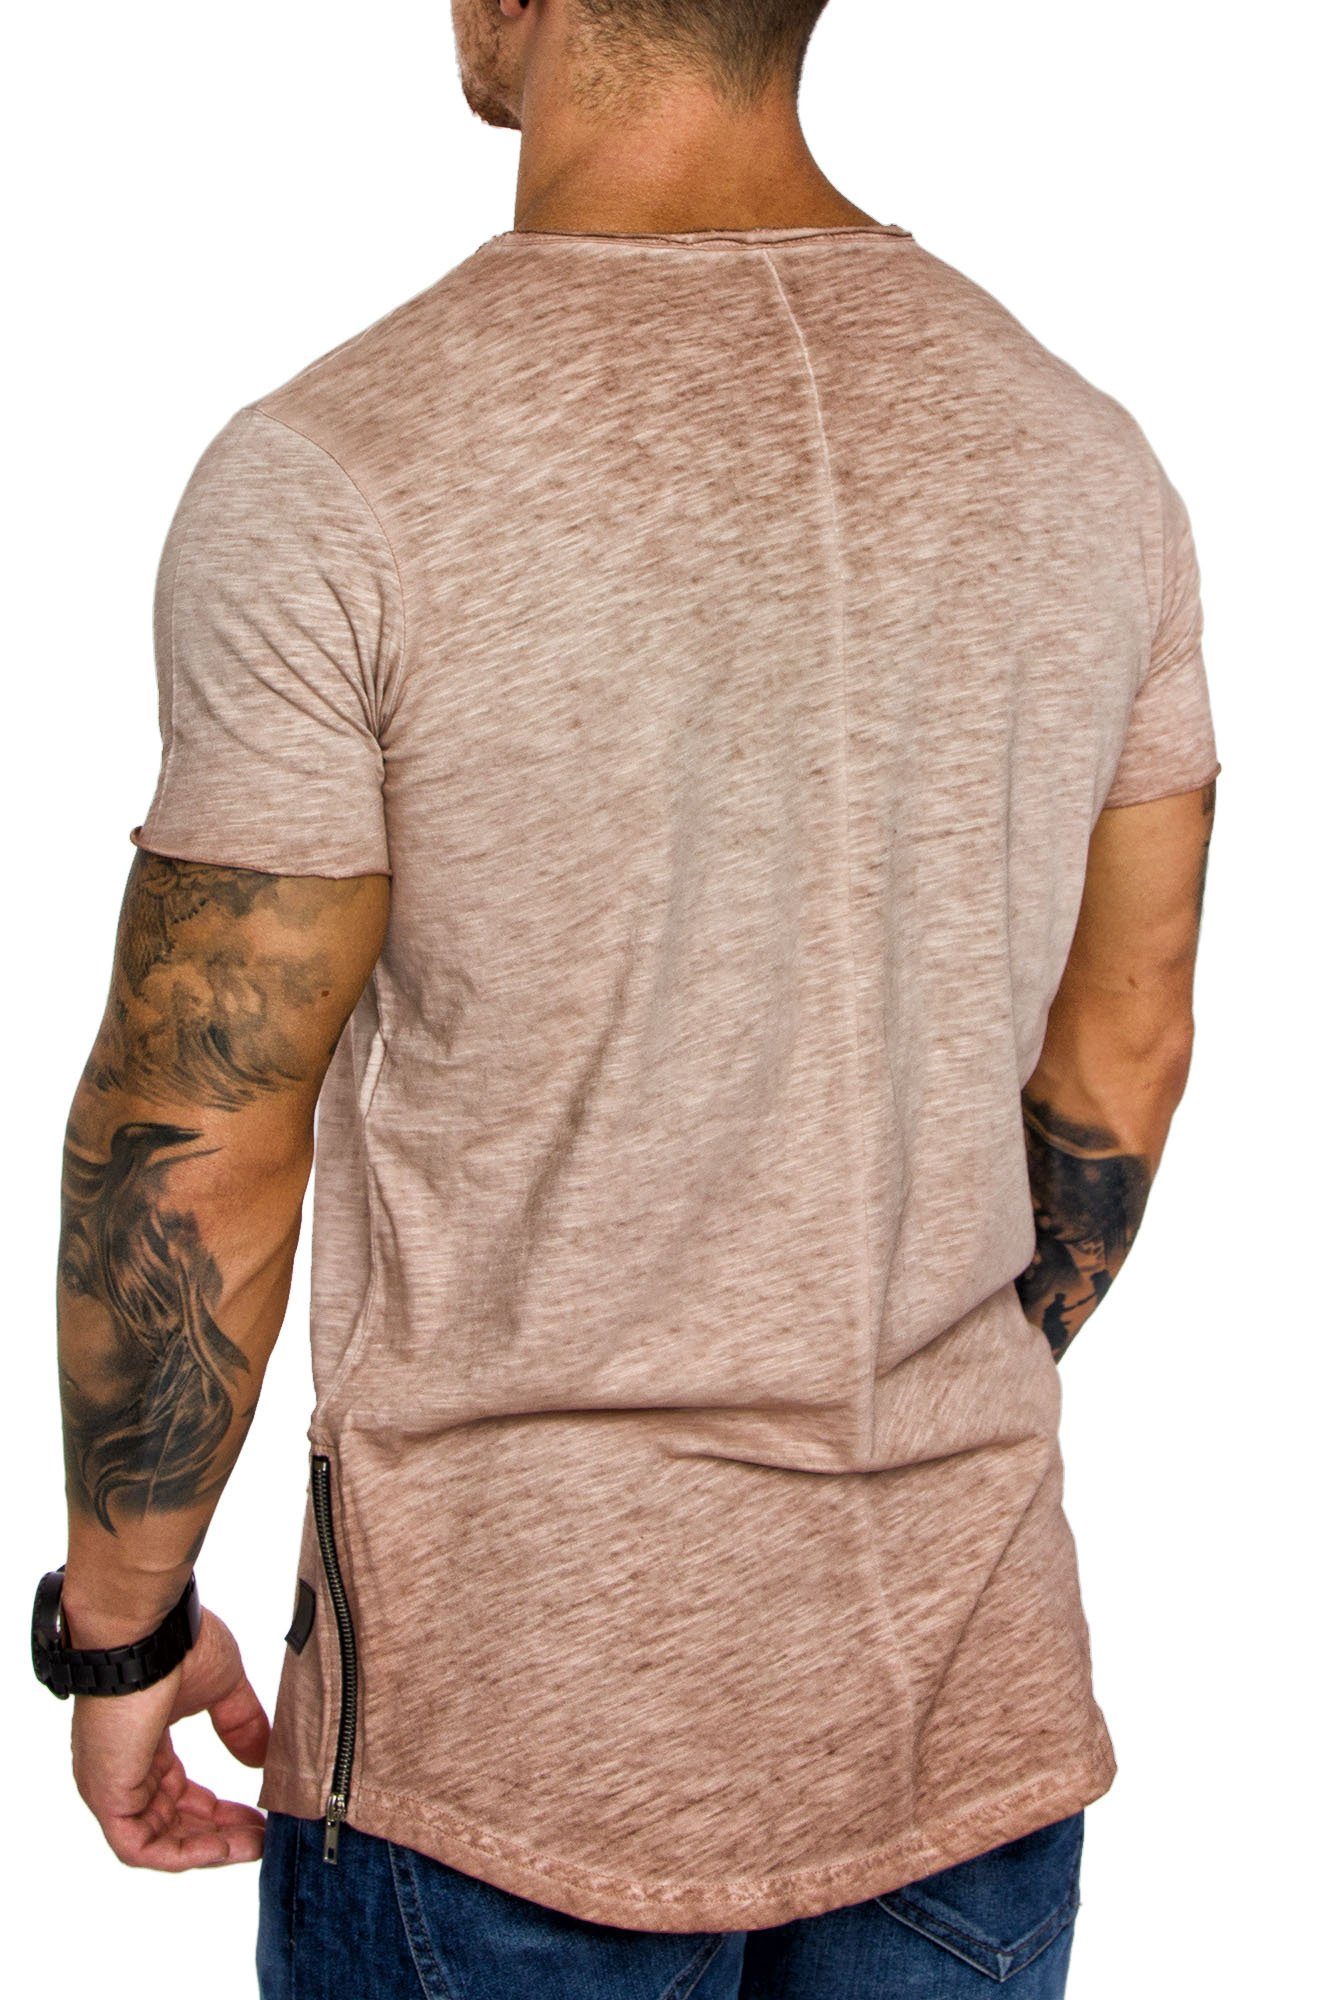 Amaci&Sons T-Shirt AUSTIN Herren Verwaschen Zipper Vintage Beige Basic Oversize Neck Crew Rundhals Shirt